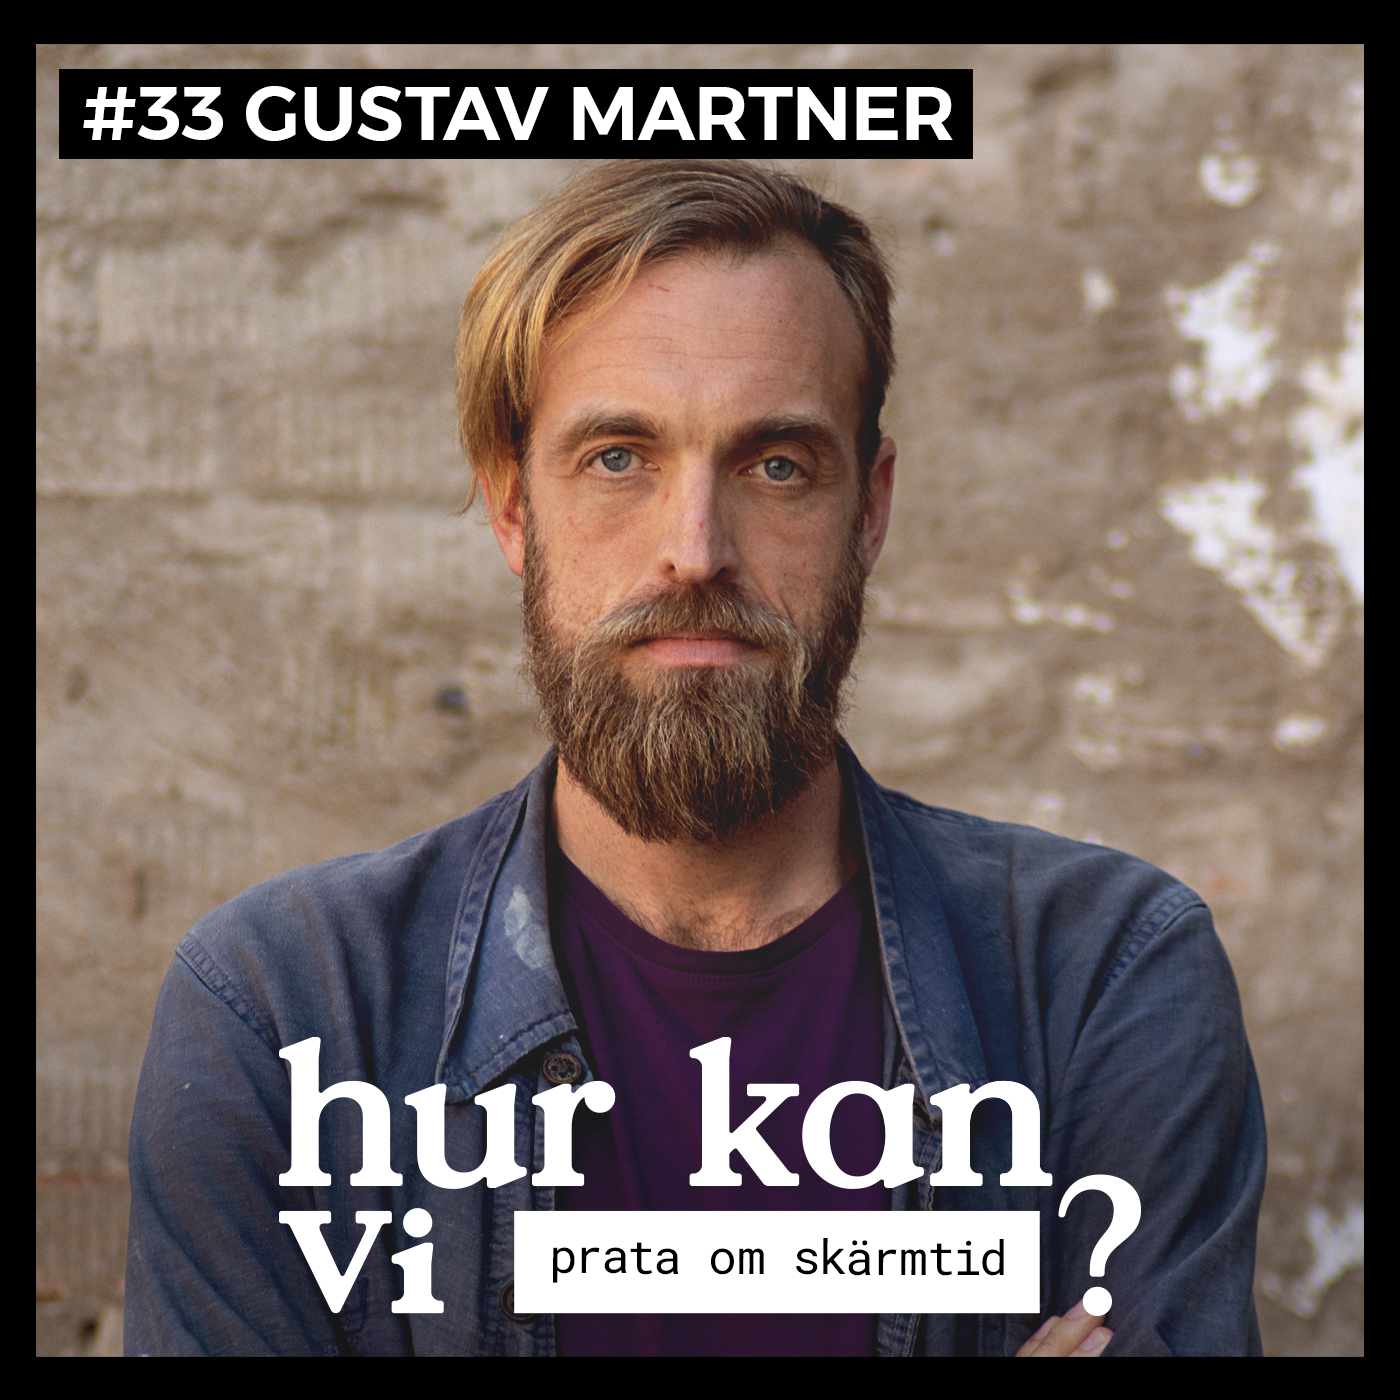 #33 Gustav Martner